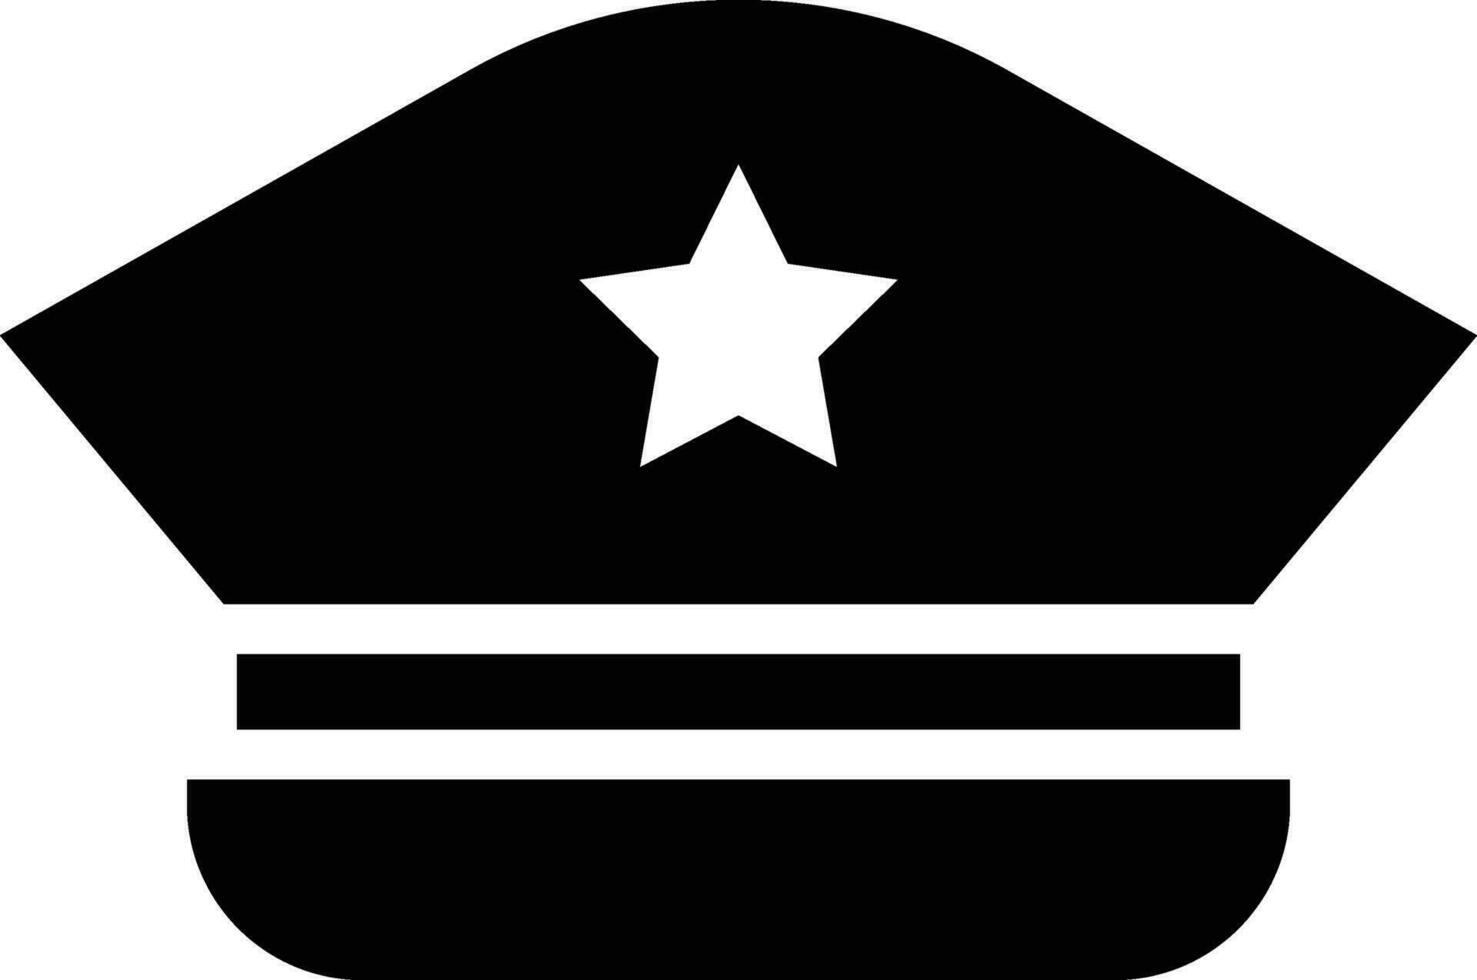 icône de vecteur de chapeau militaire